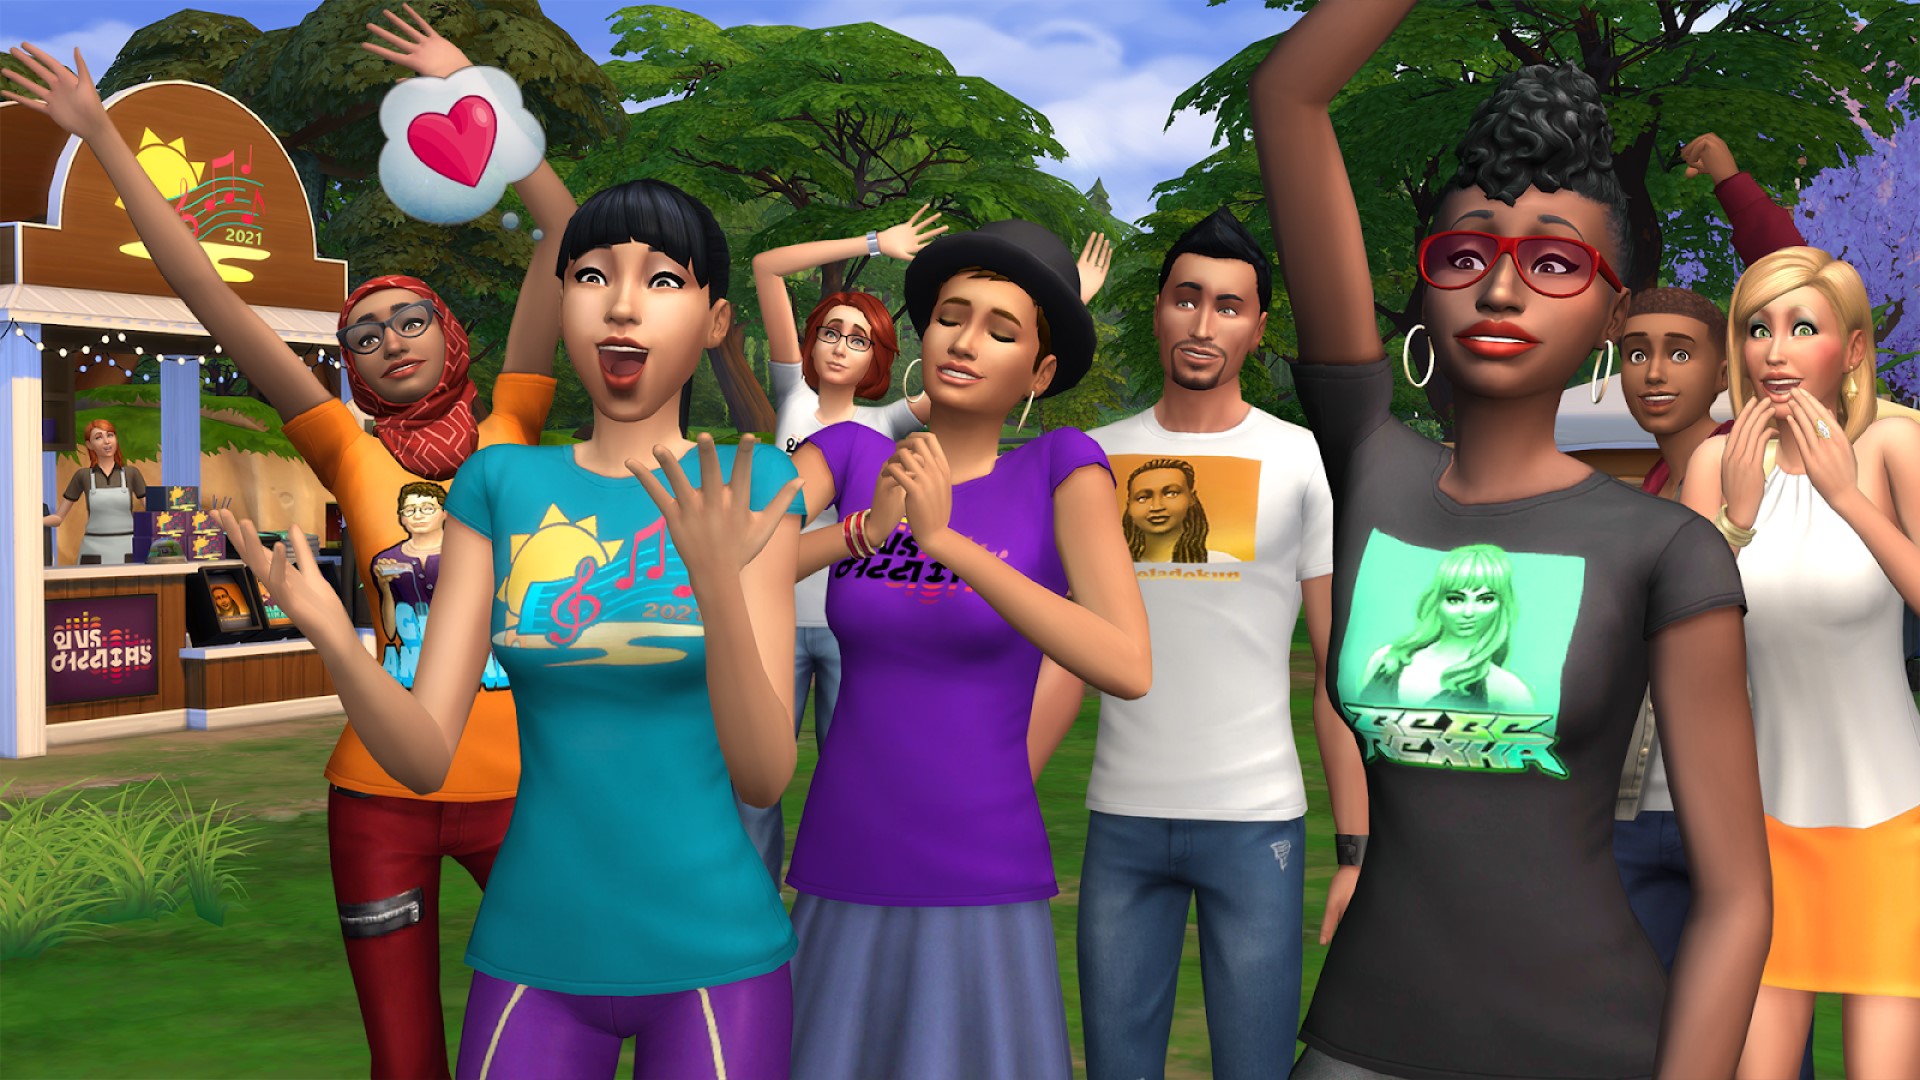 На следующей неделе в The Sims 4 пройдет музыкальный фестиваль с участием Беби Рексы.